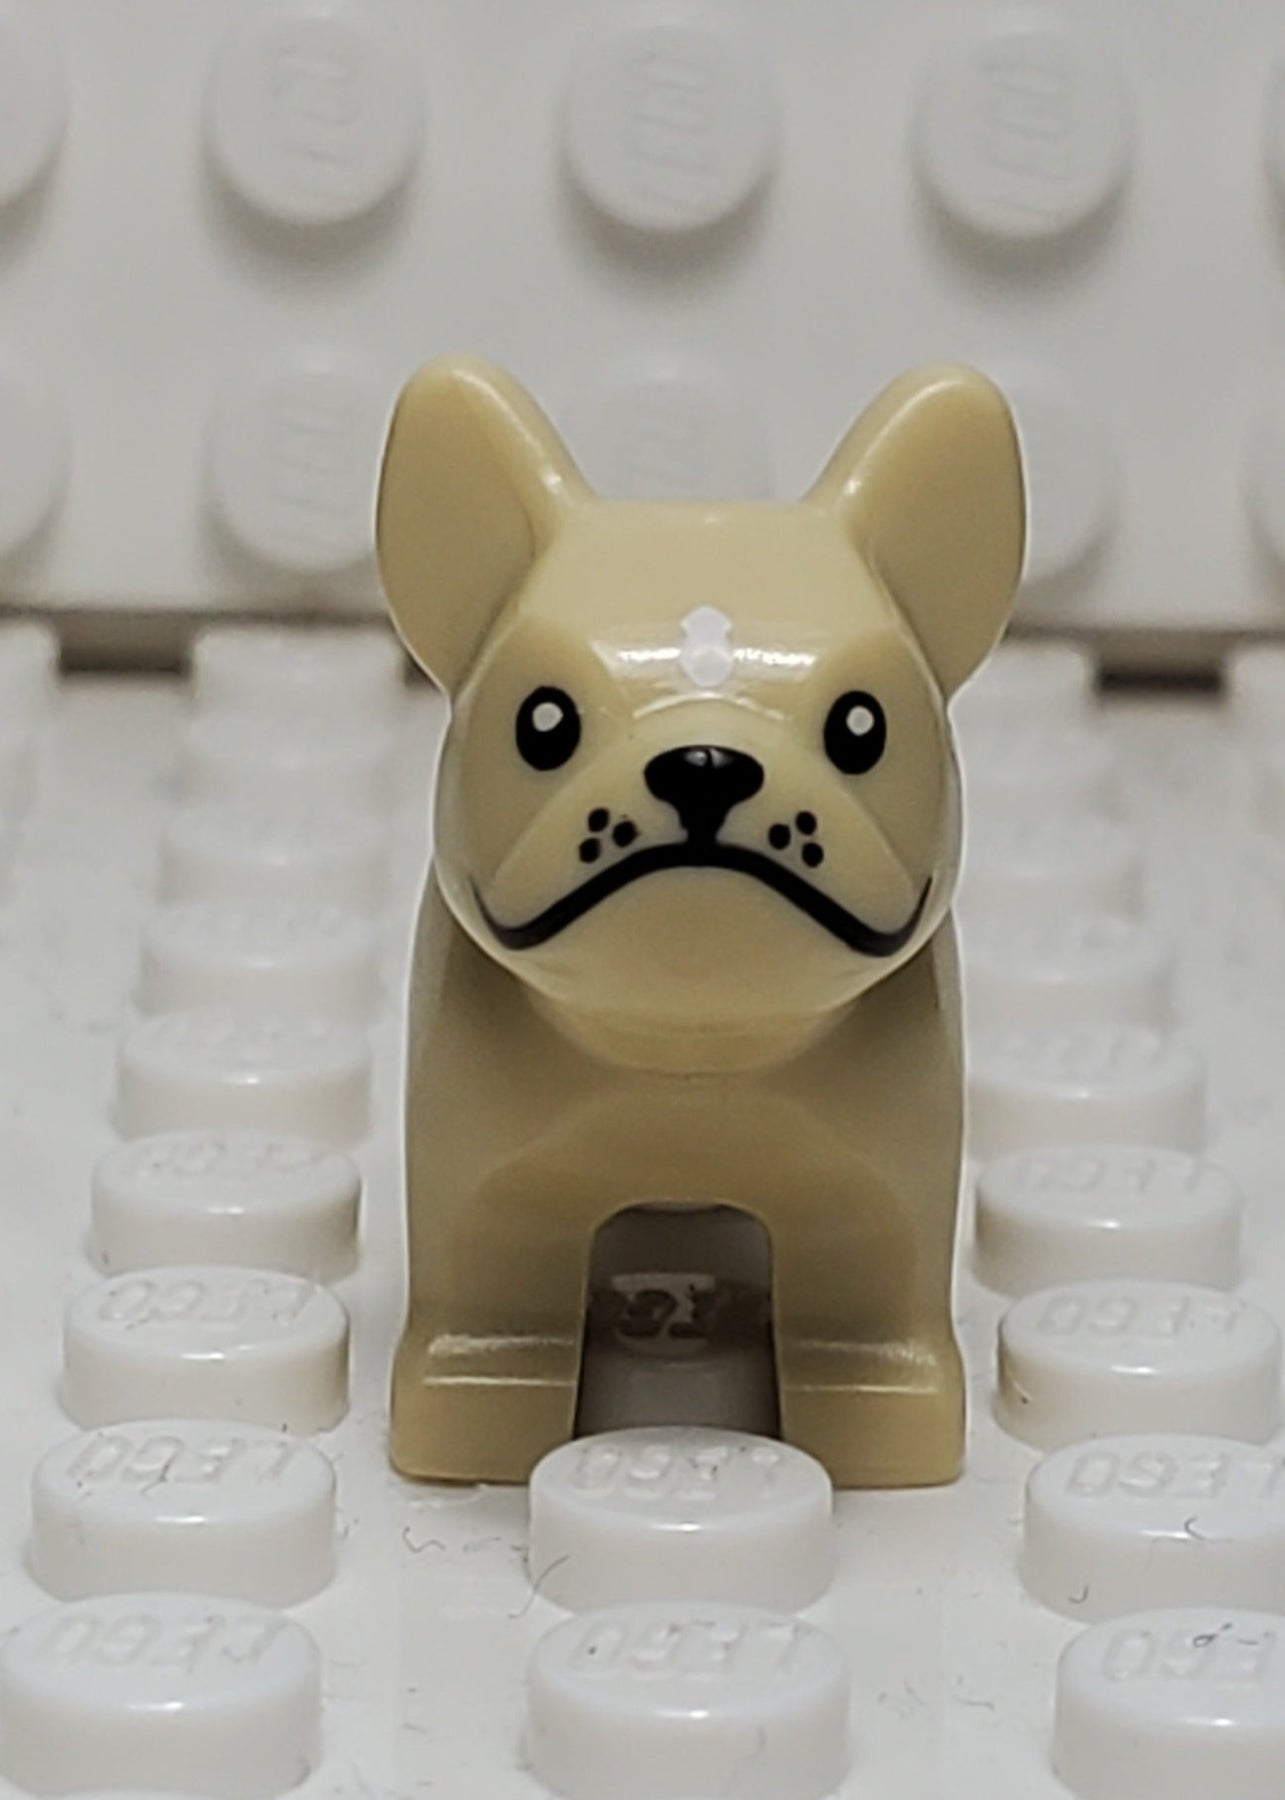 LEGO - Animal Land - Dog, French Bulldog w/ Black Eyes, Nose, Mouth, Pink  Tongue